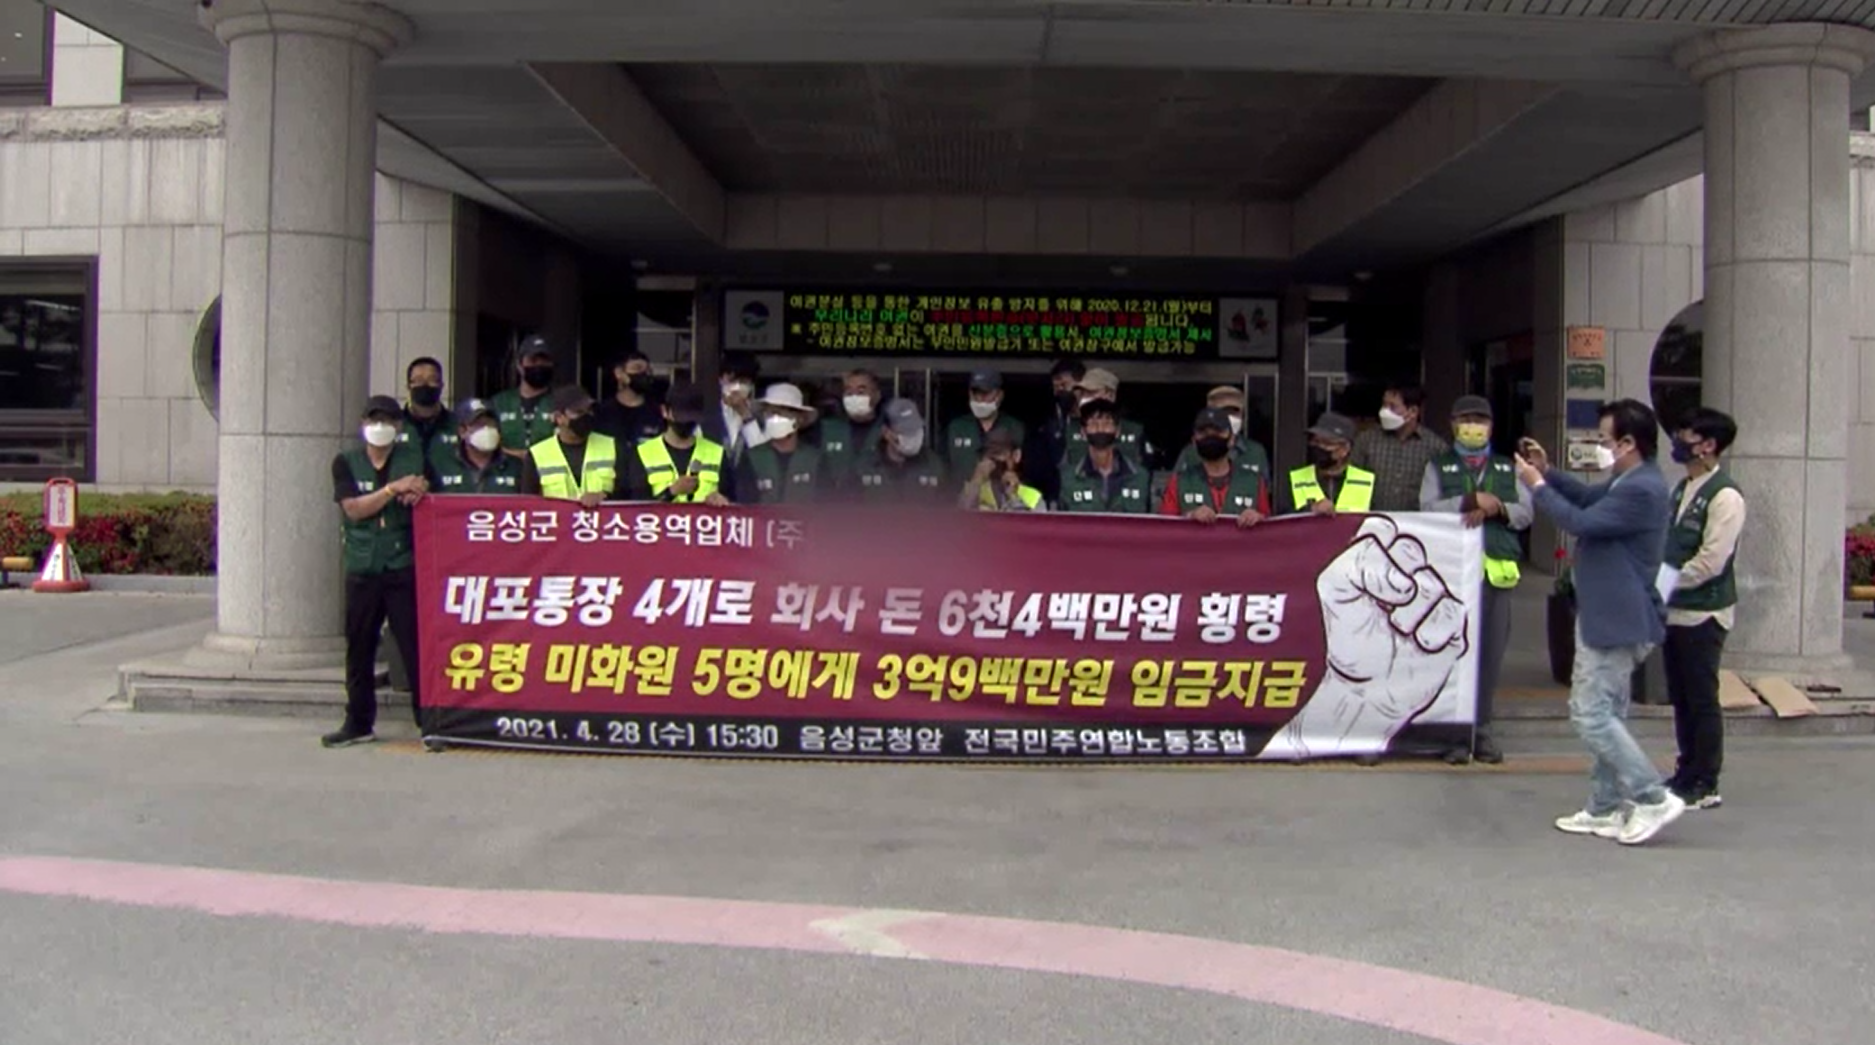 지난달 28일 충북 음성군의 한 청소 용역업체 비리 의혹을 제기하는 기자회견이 열렸다.